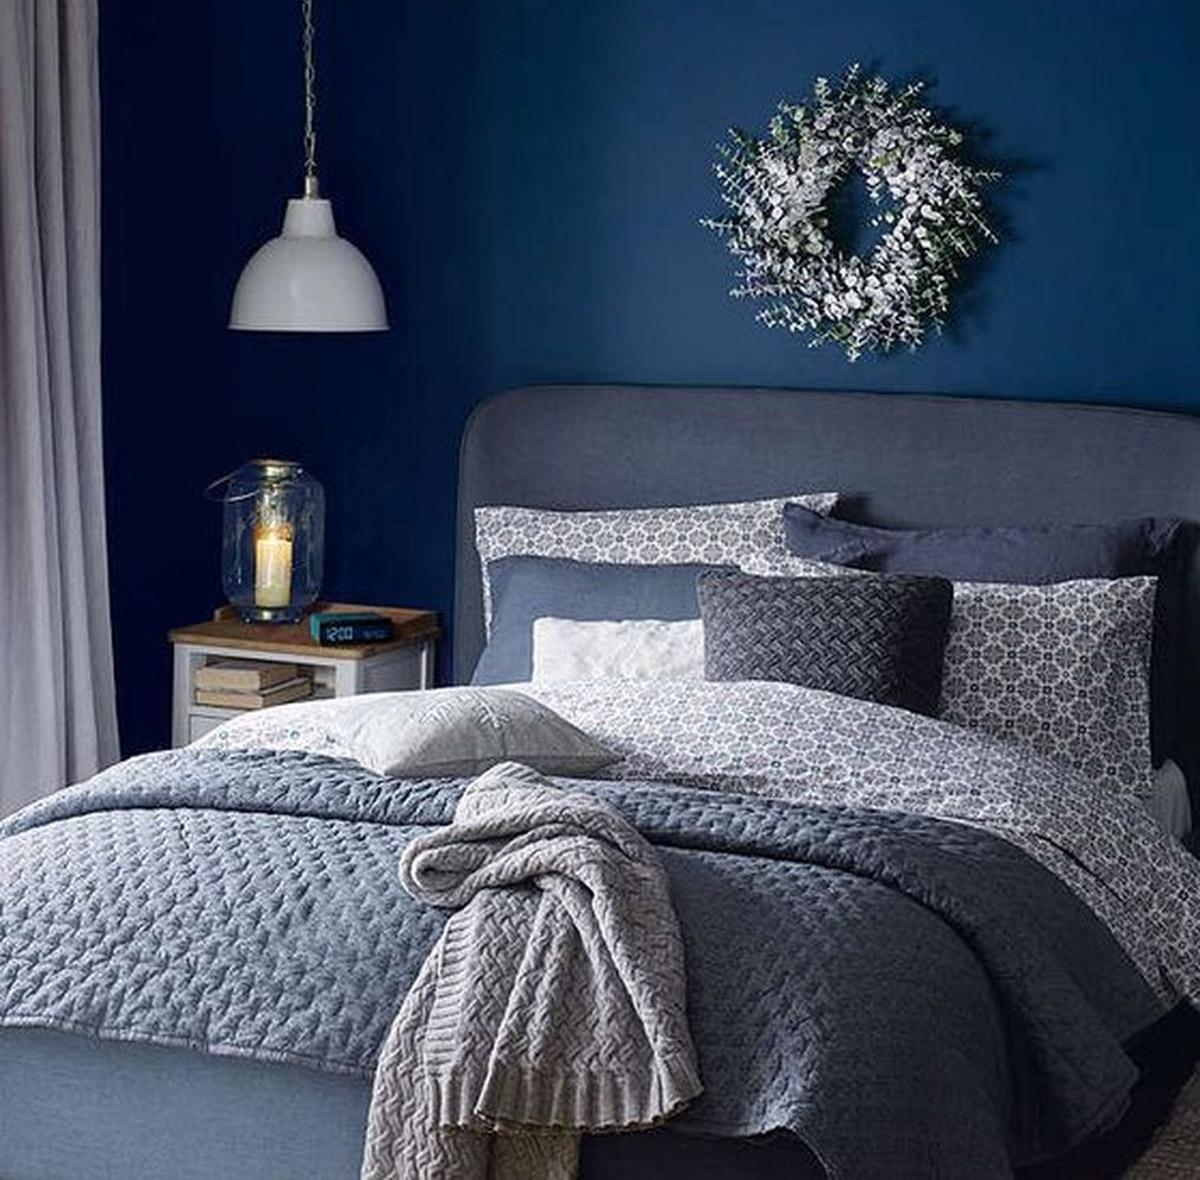 trang trí nội thất phòng ngủ đẹp với màu xanh mát mẻ